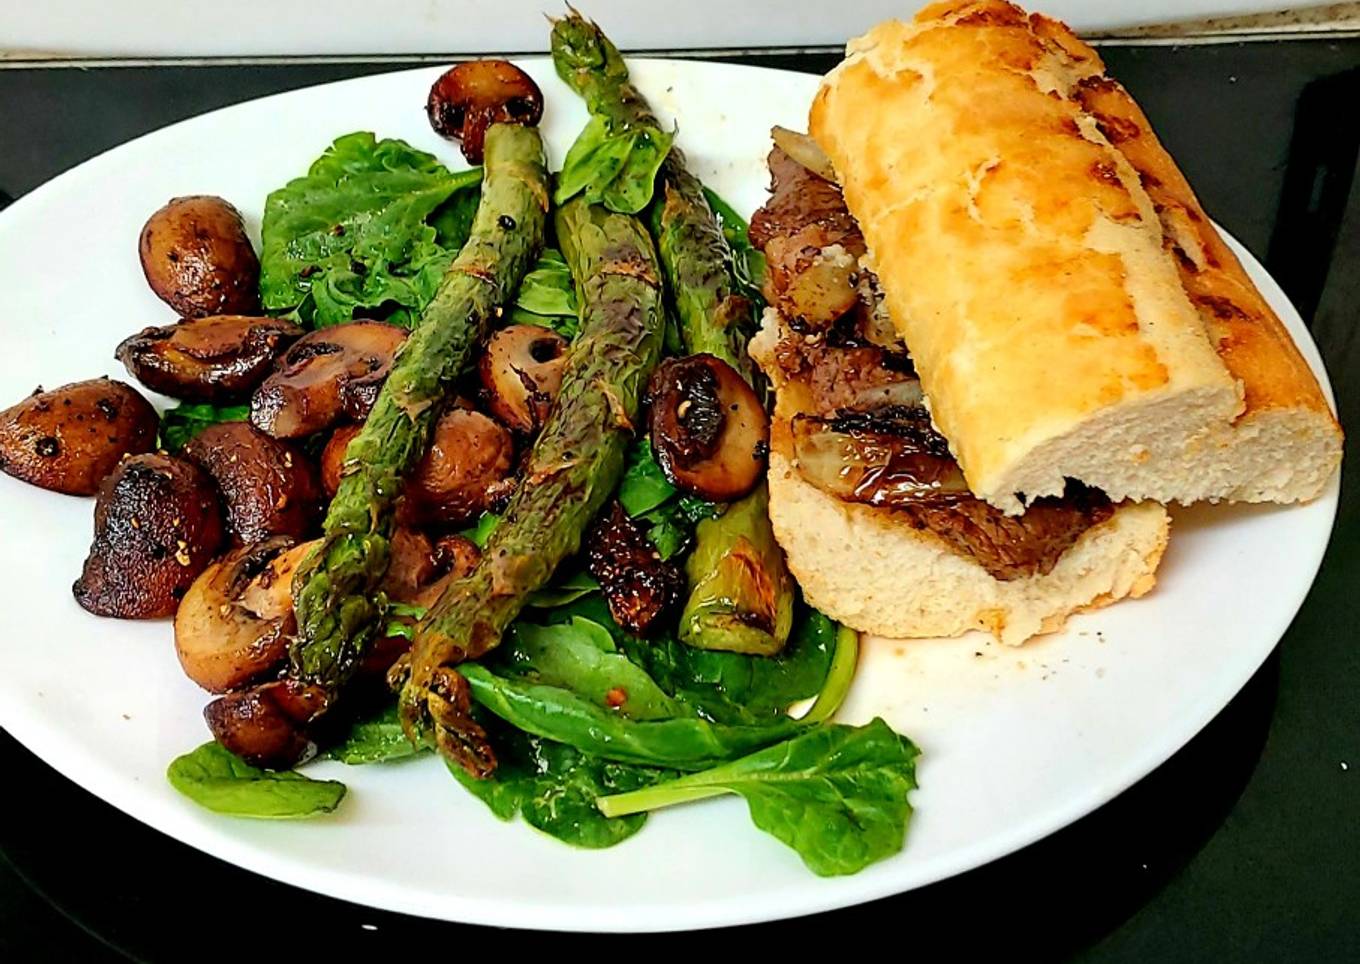 My Garlic Ribeye Sandwich. With spinach, Asparagus + Mushrooms